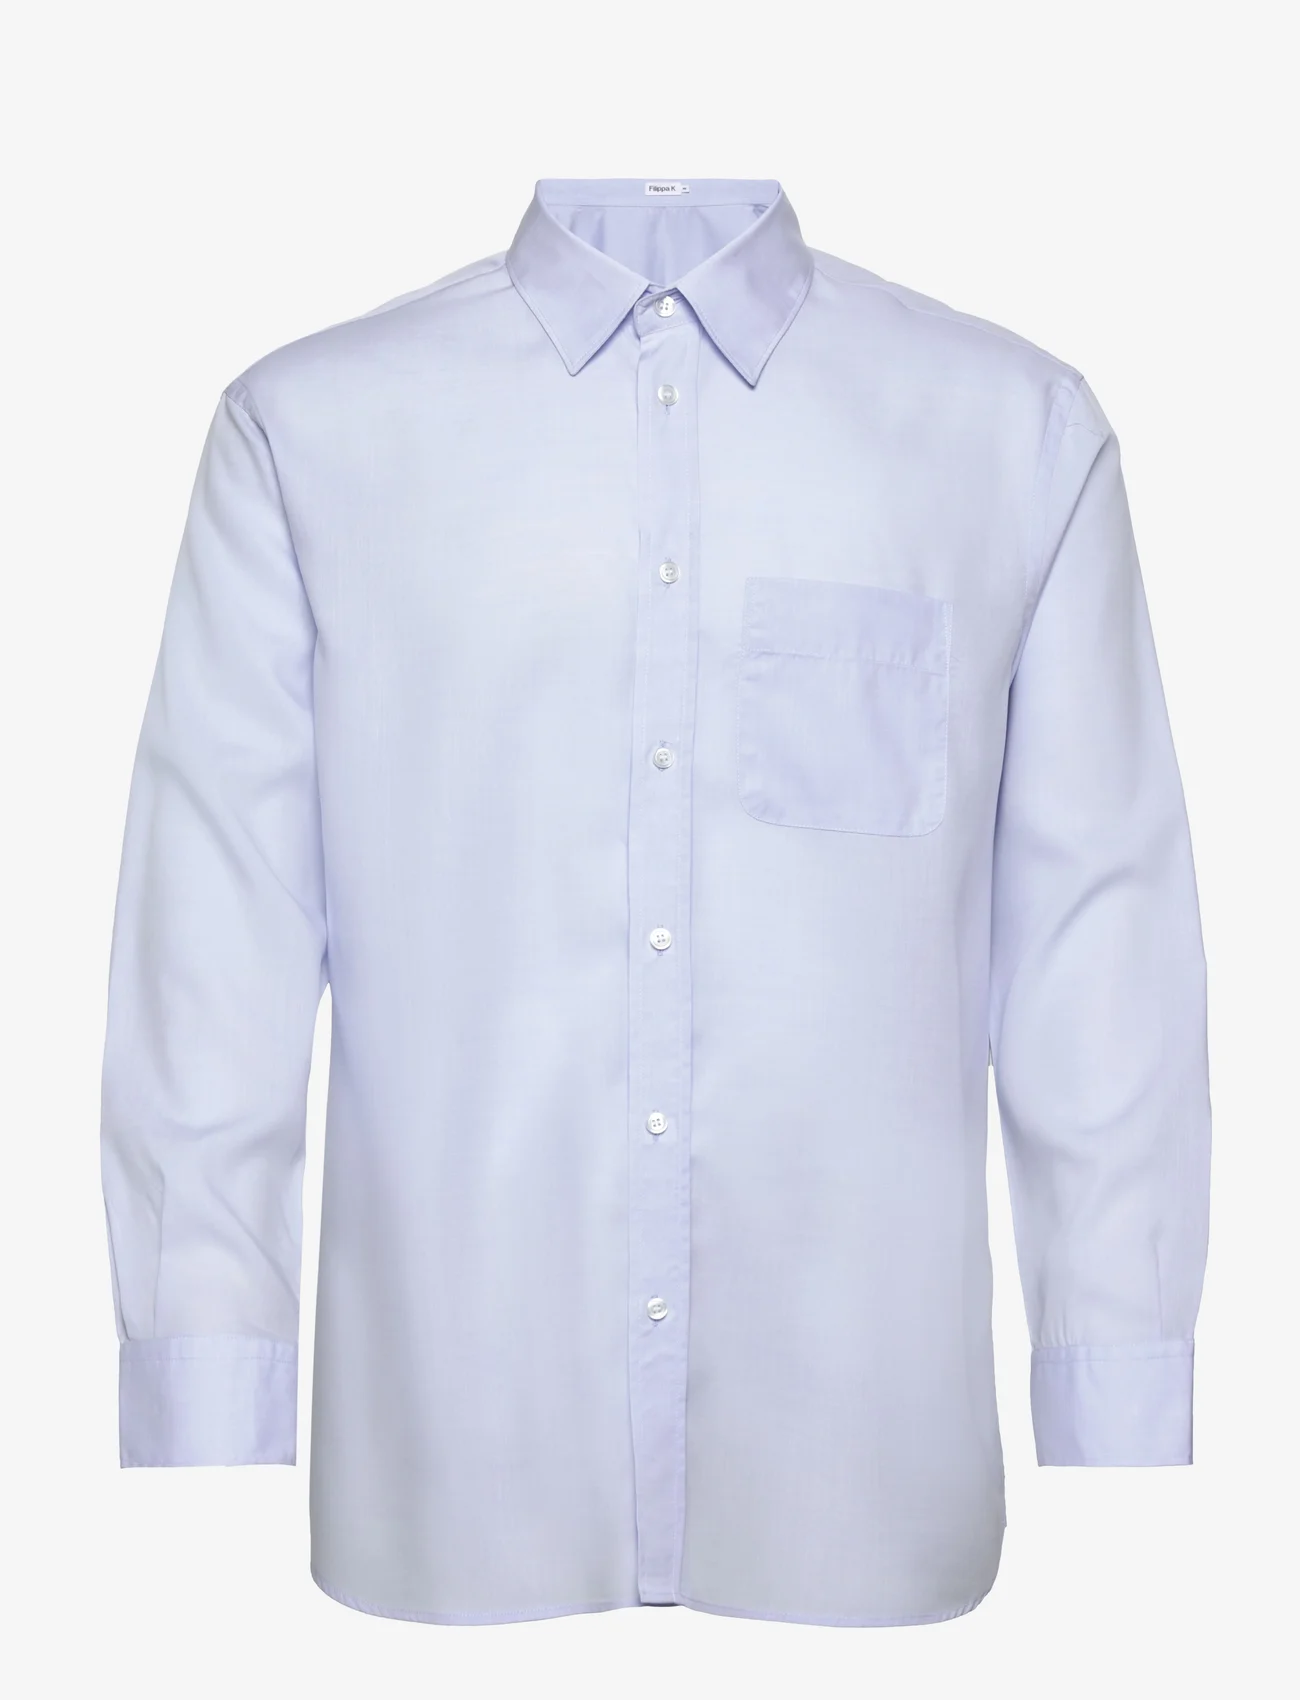 Filippa K - M. Noel Tencel Shirt - basic shirts - soft blue - 0